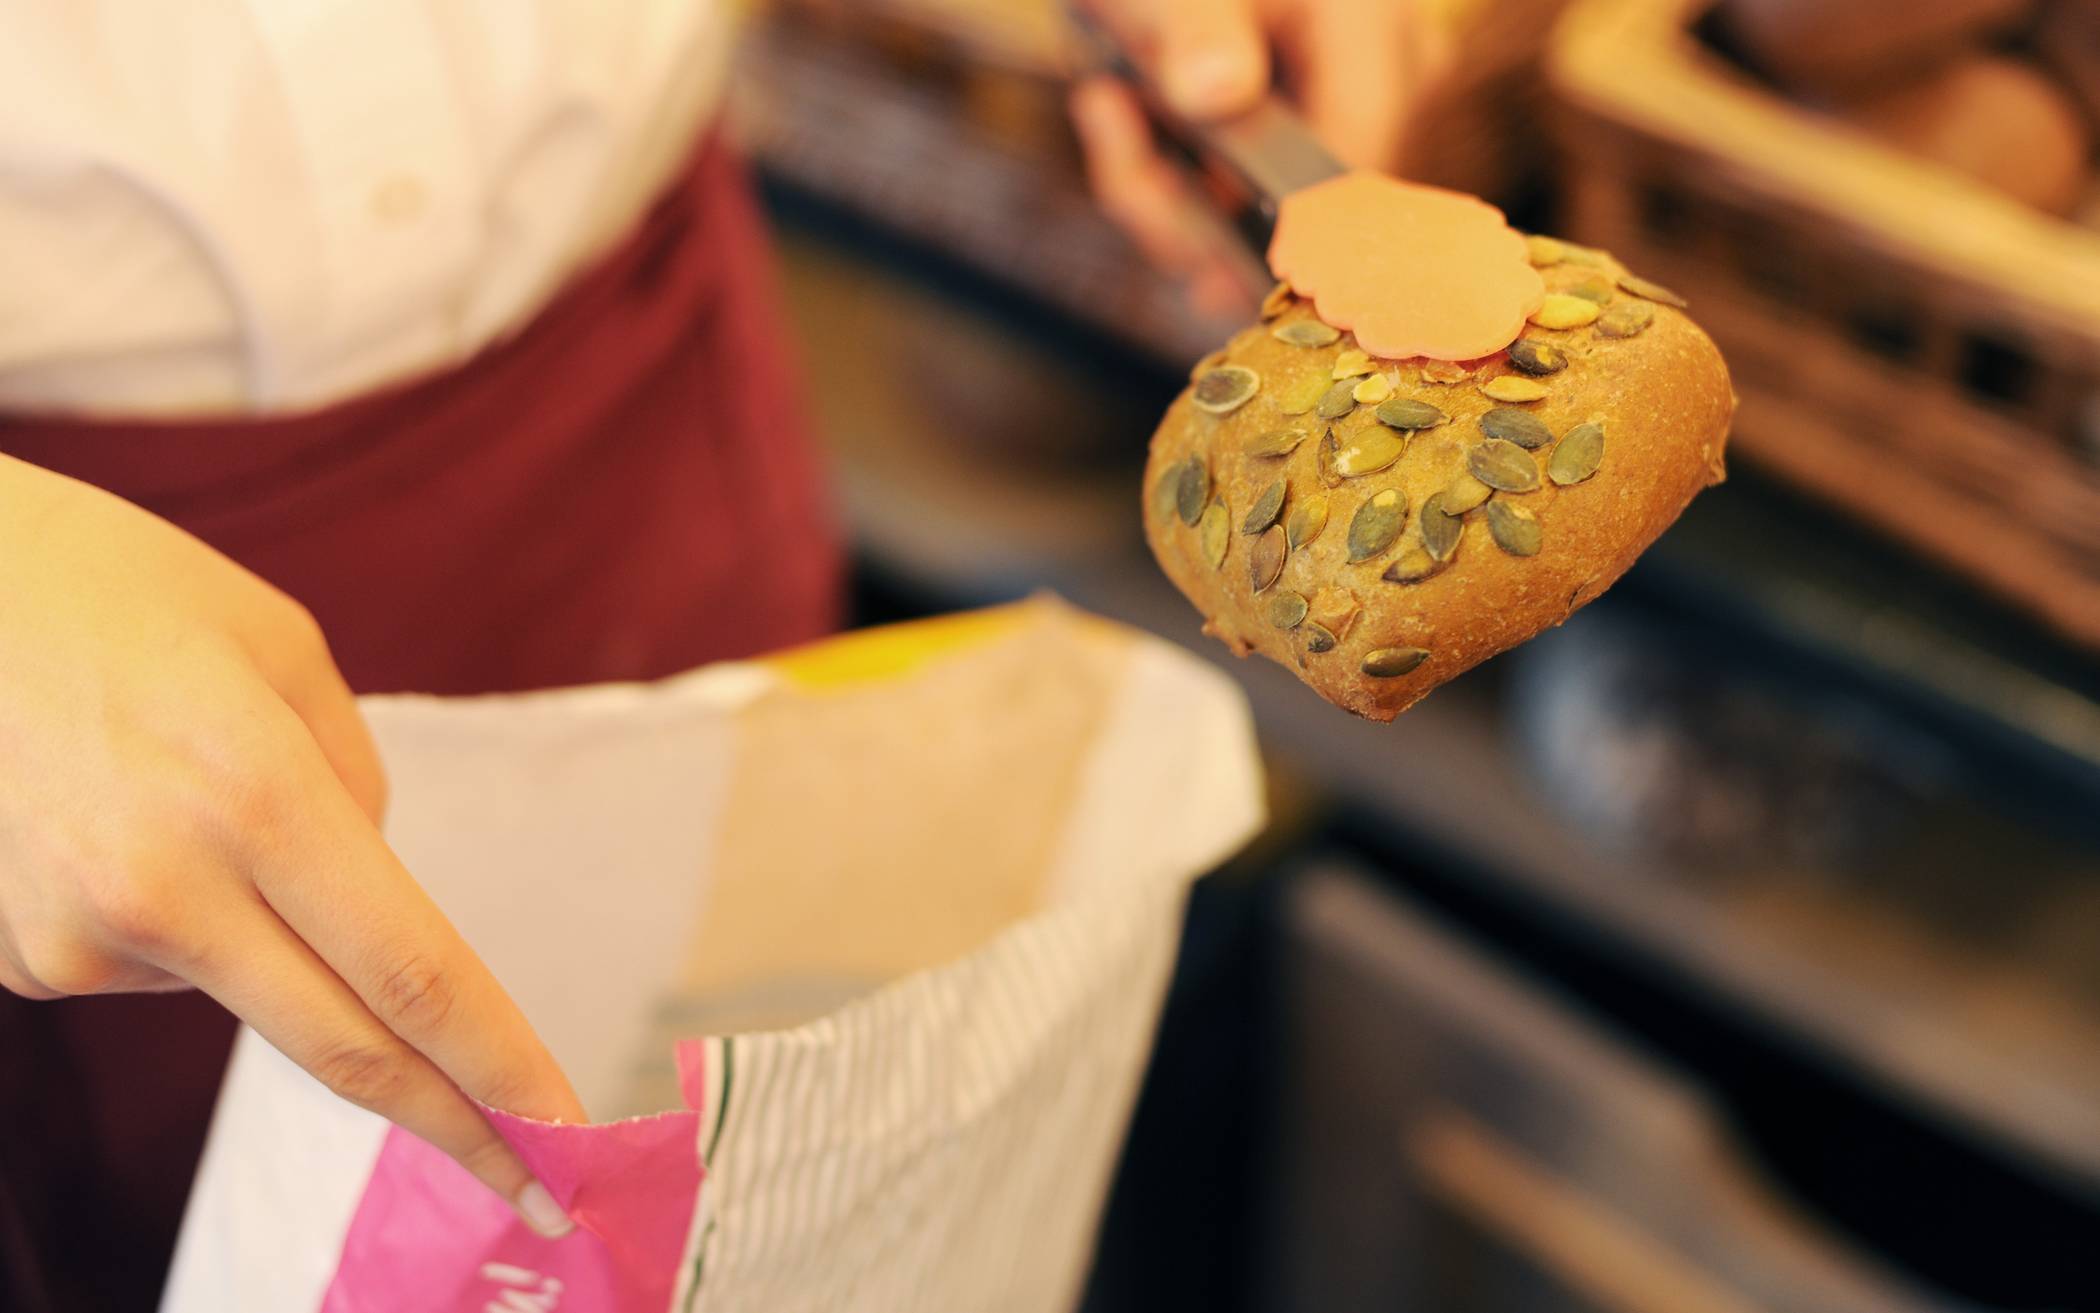  In vielen Innungsbäckereien bleibt am Mittwoch das Licht aus – damit setzen die Bäcker ein Zeichen gegen die steigenden Energiepreise. 